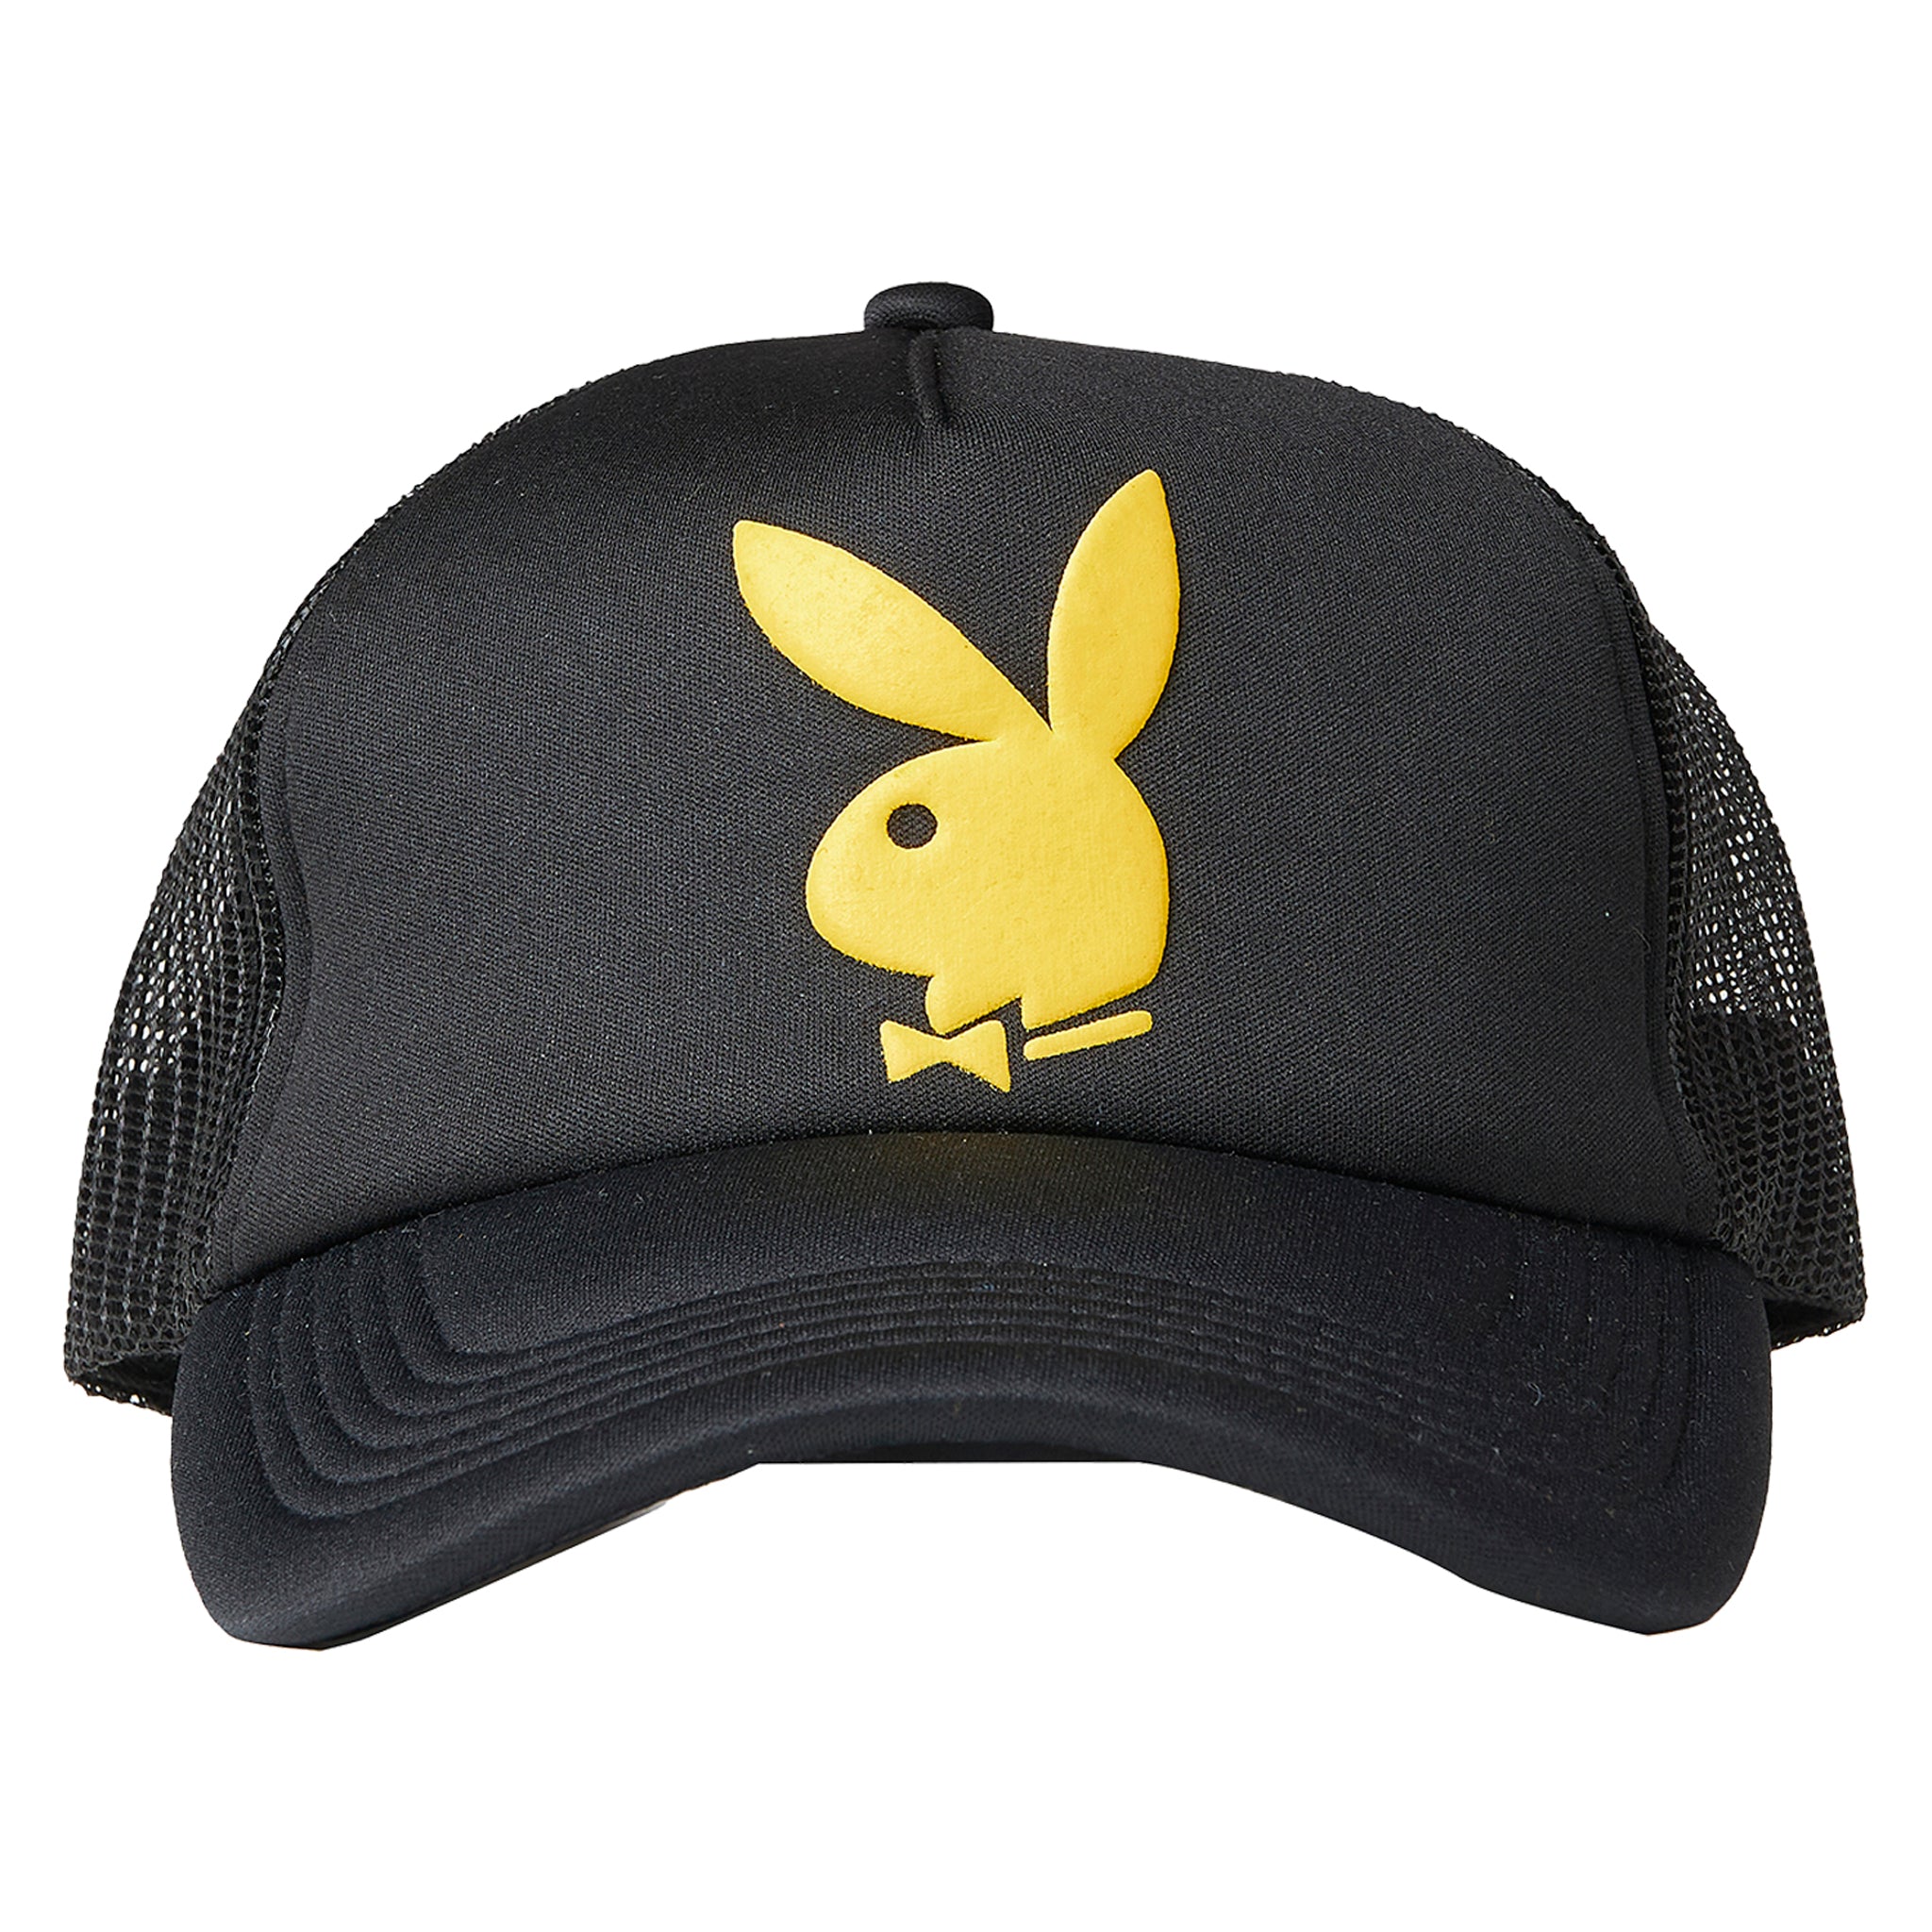 Men's Playboy Hats | Playboy.com